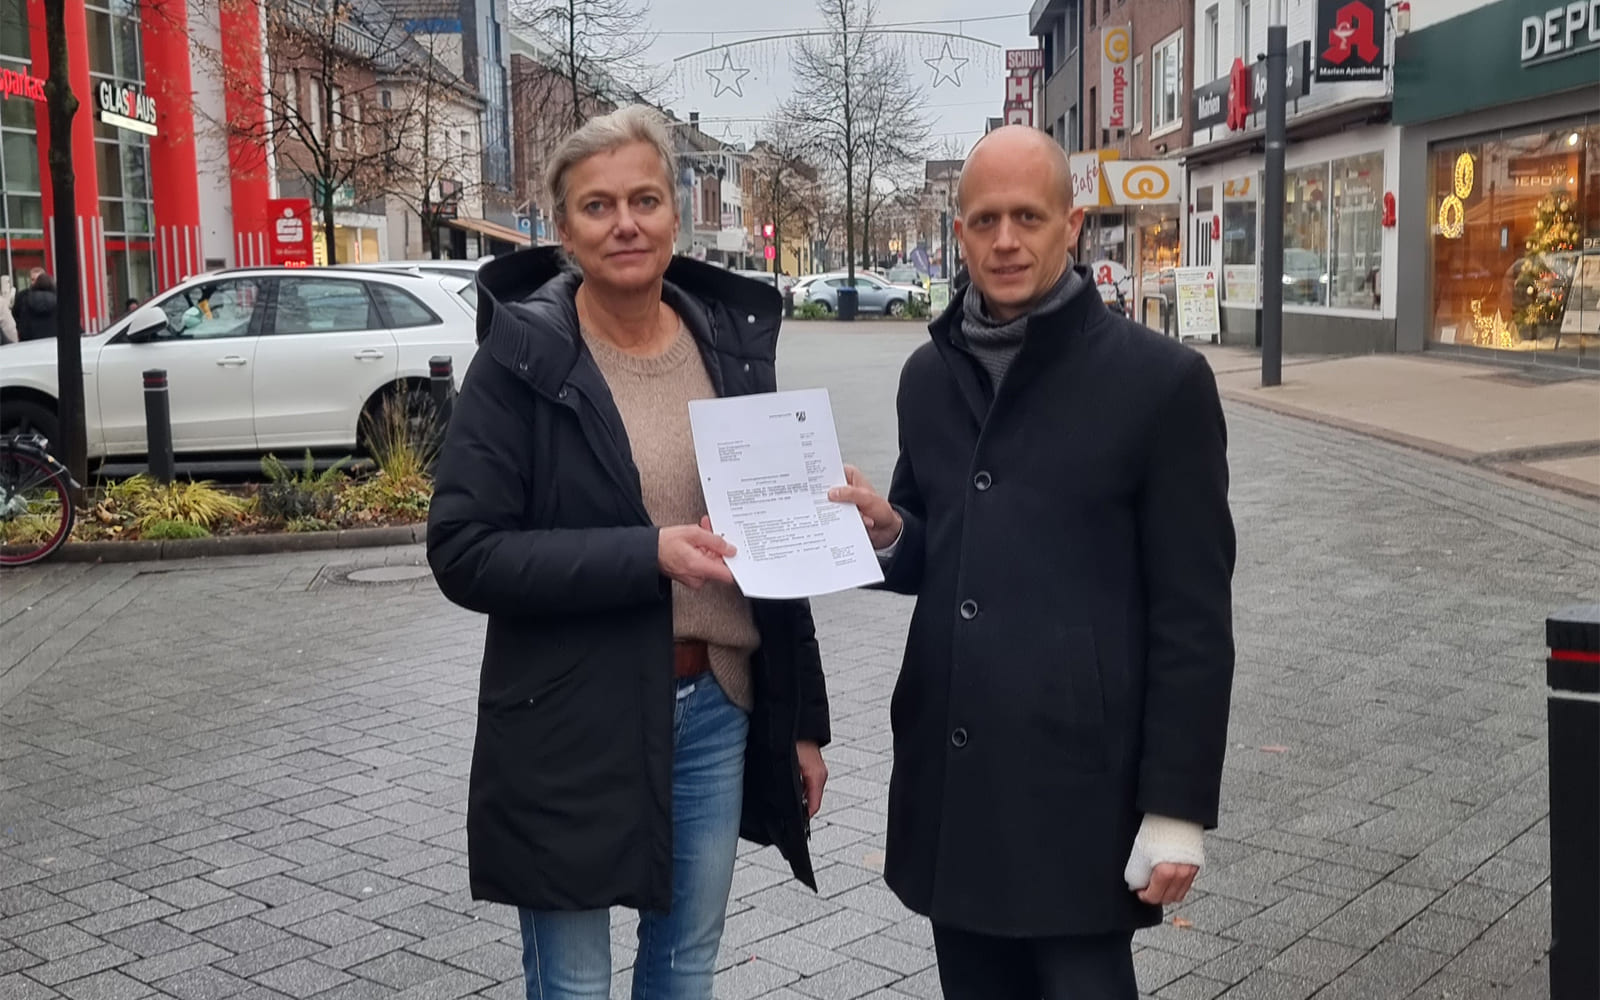 Stärkung der Kreisstadt Heinsberg: Erfolgreiches Citymanagement wird weitergeführt